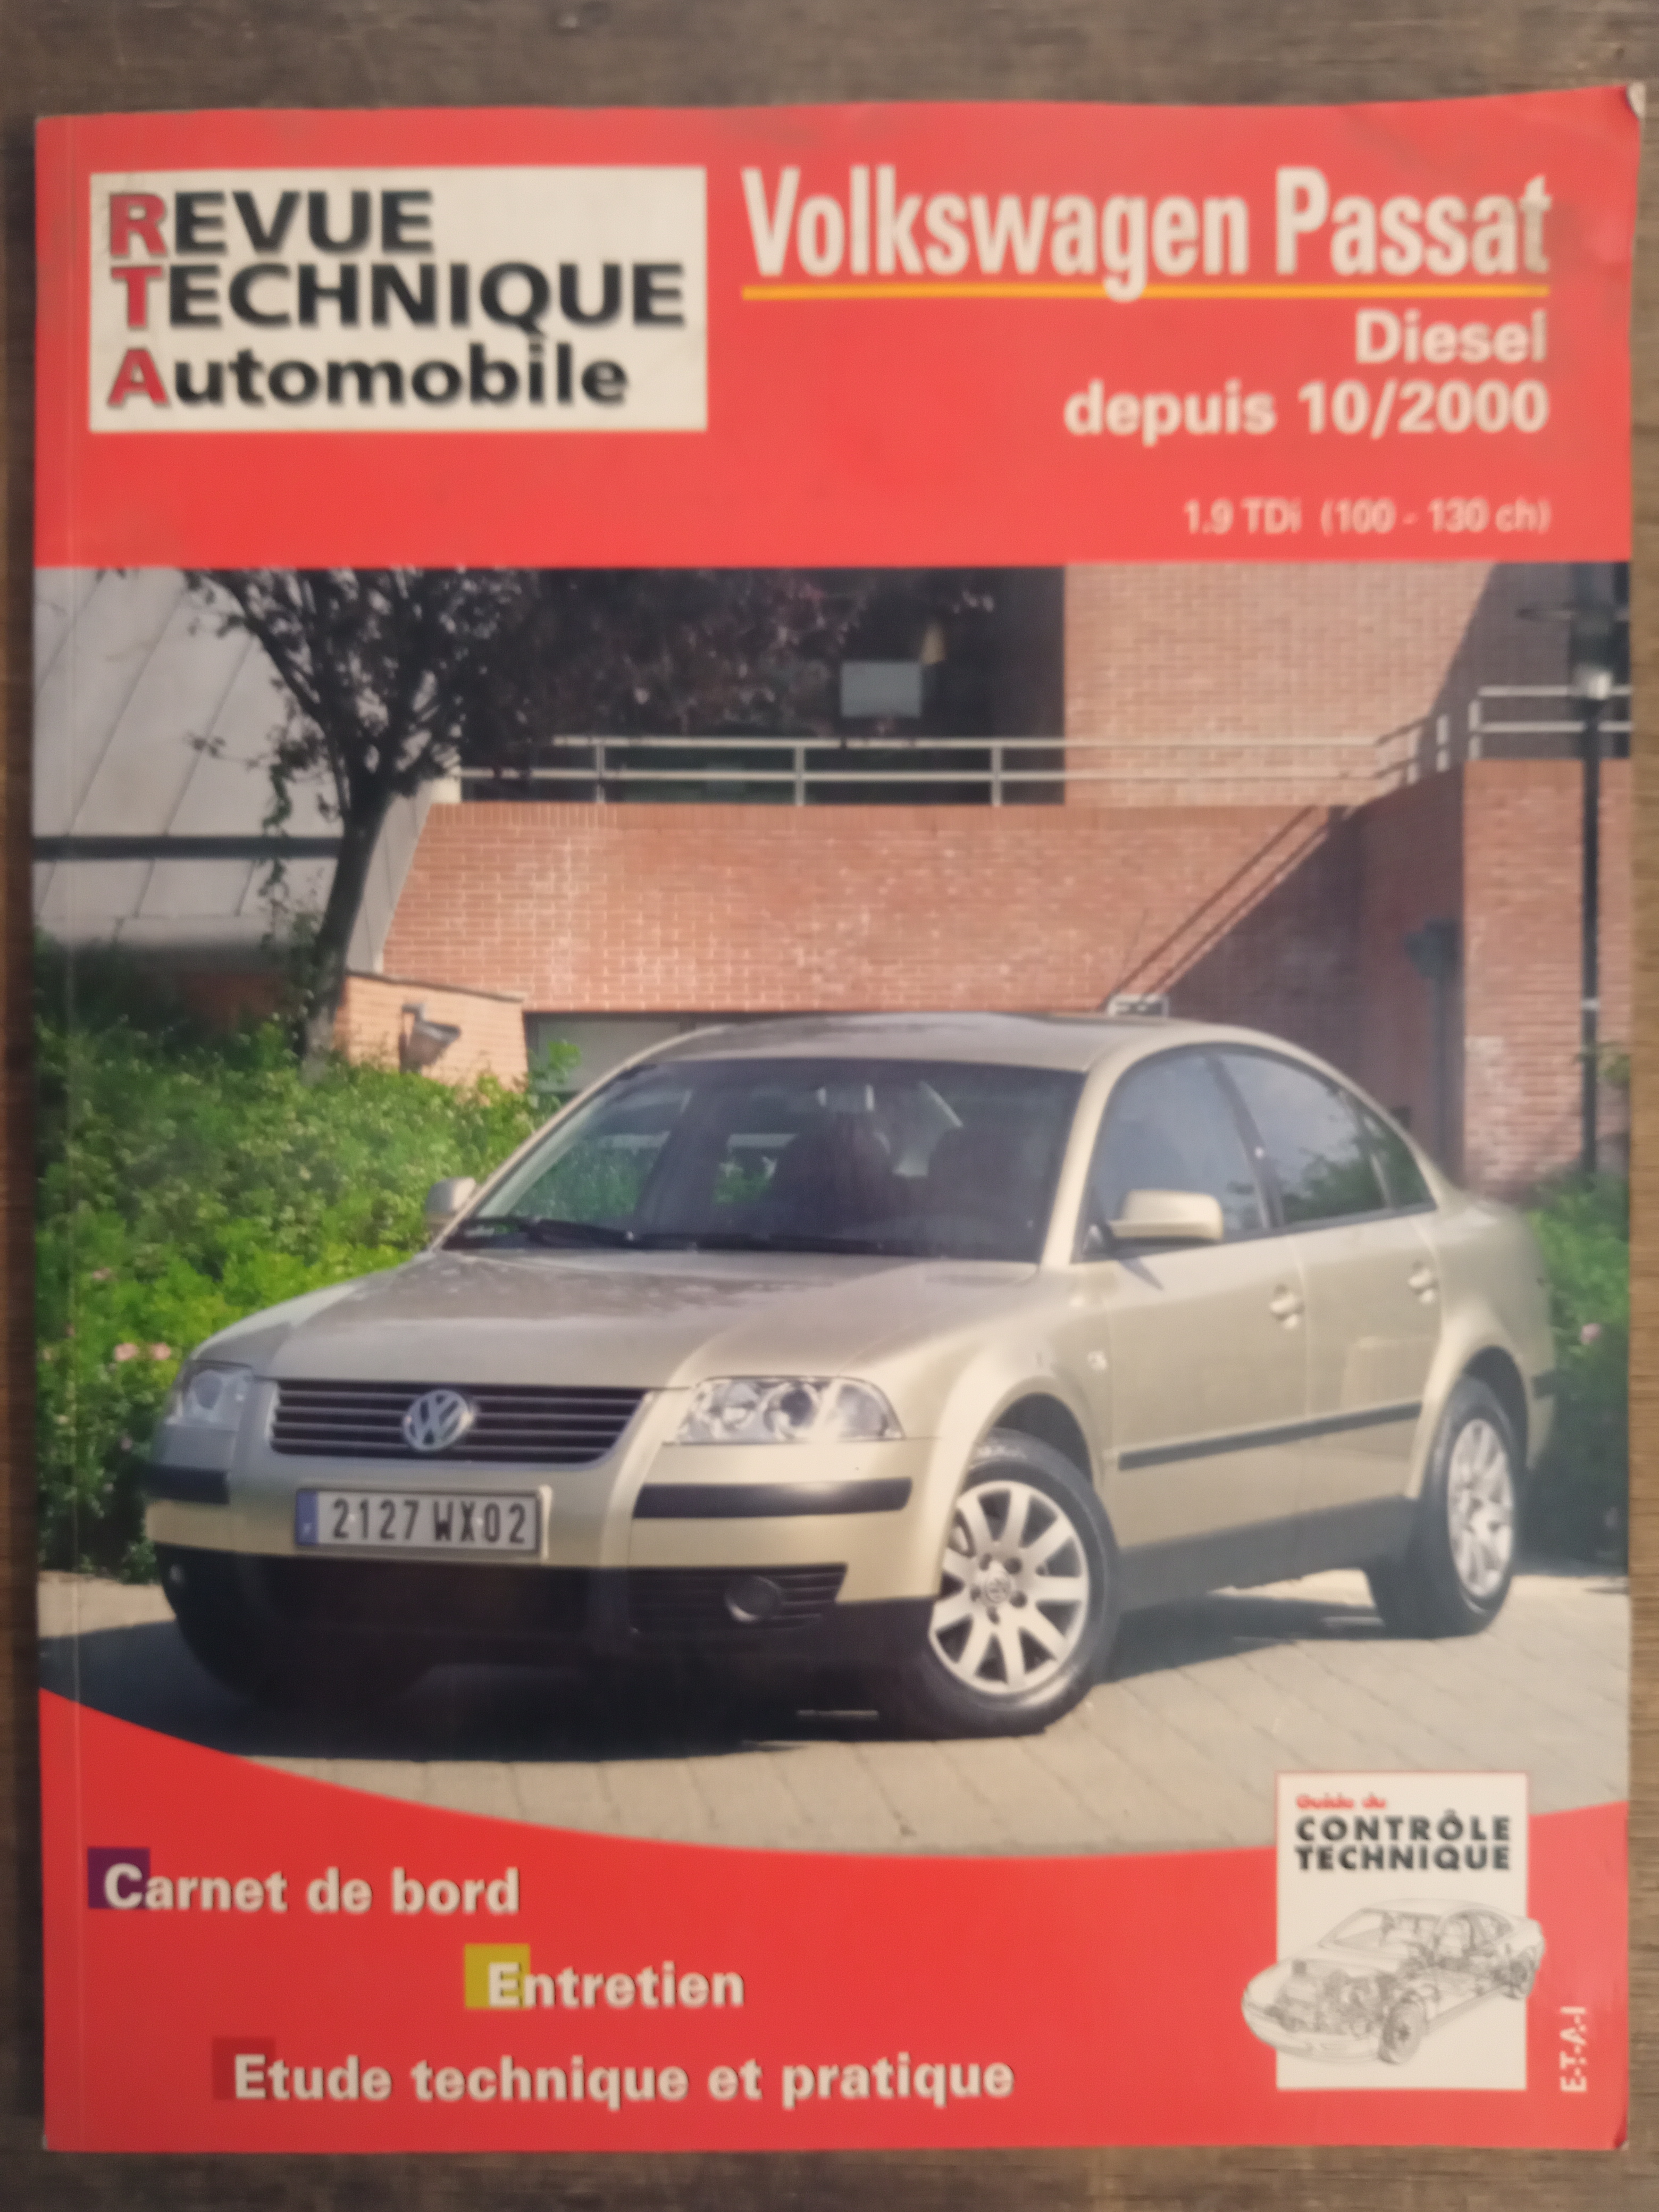 Revue Technique Automobile - Les Kiosques de Toulon